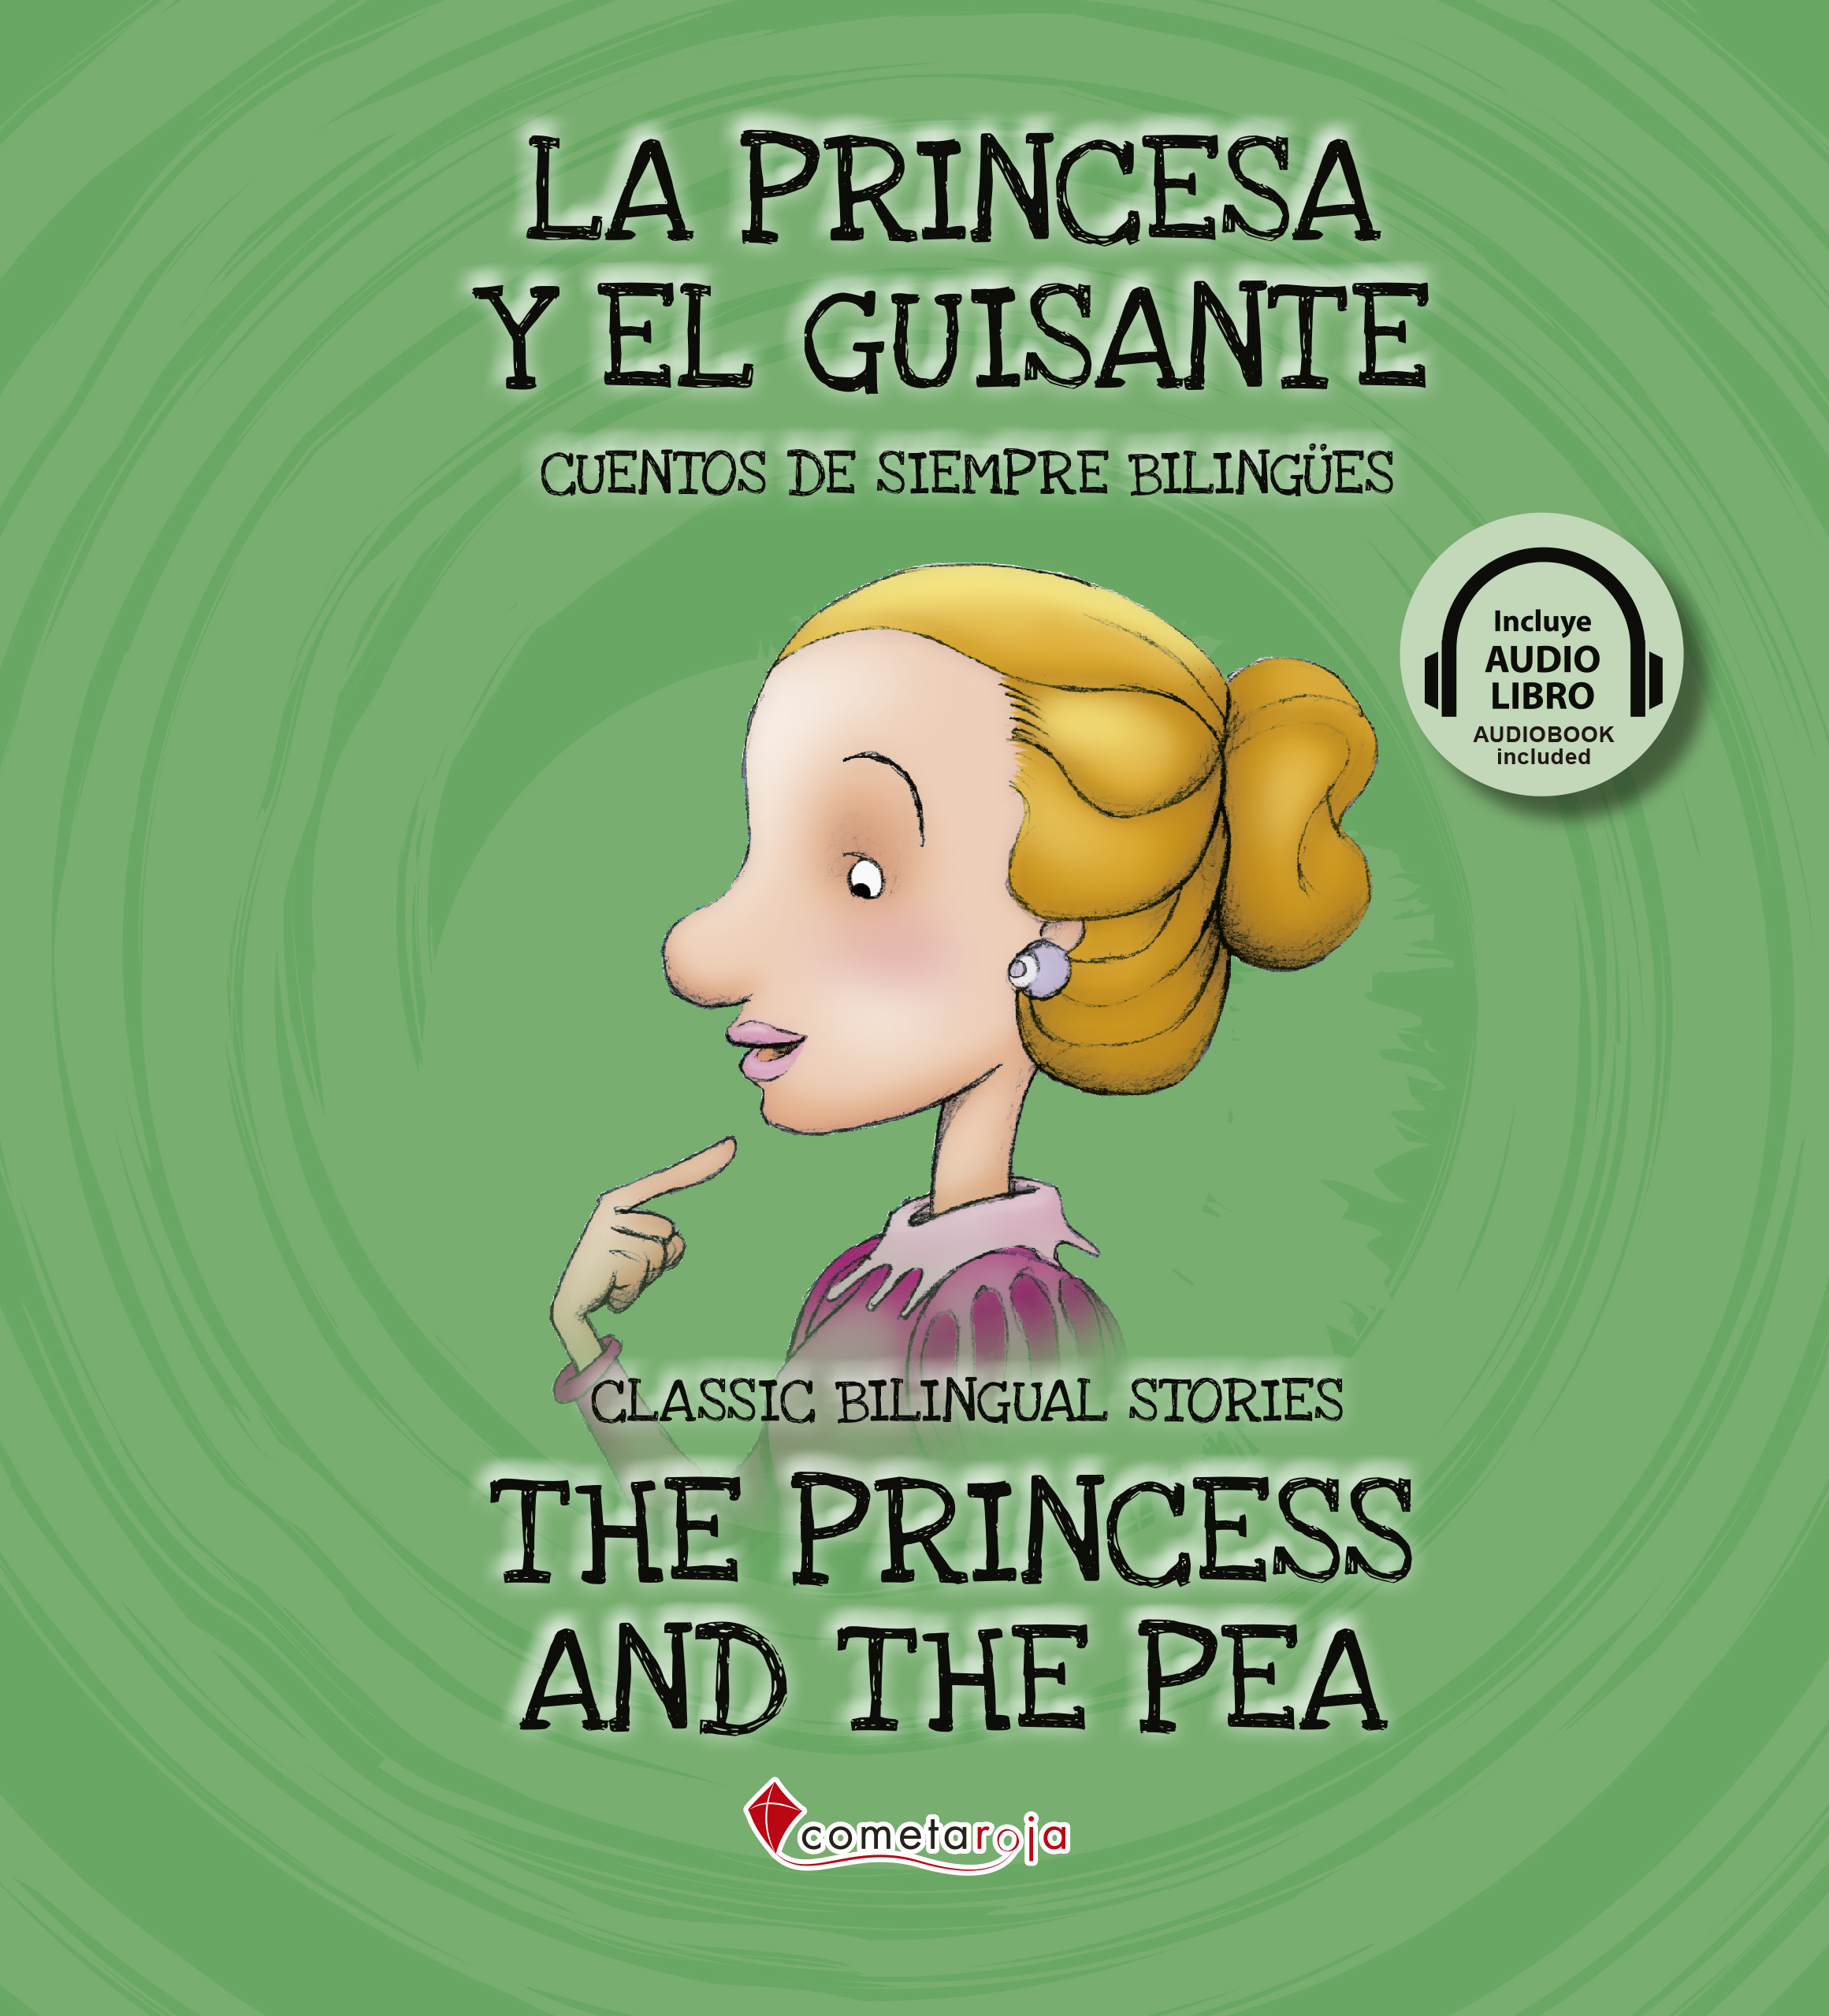 La princesa y el guisante / The princess and the pea